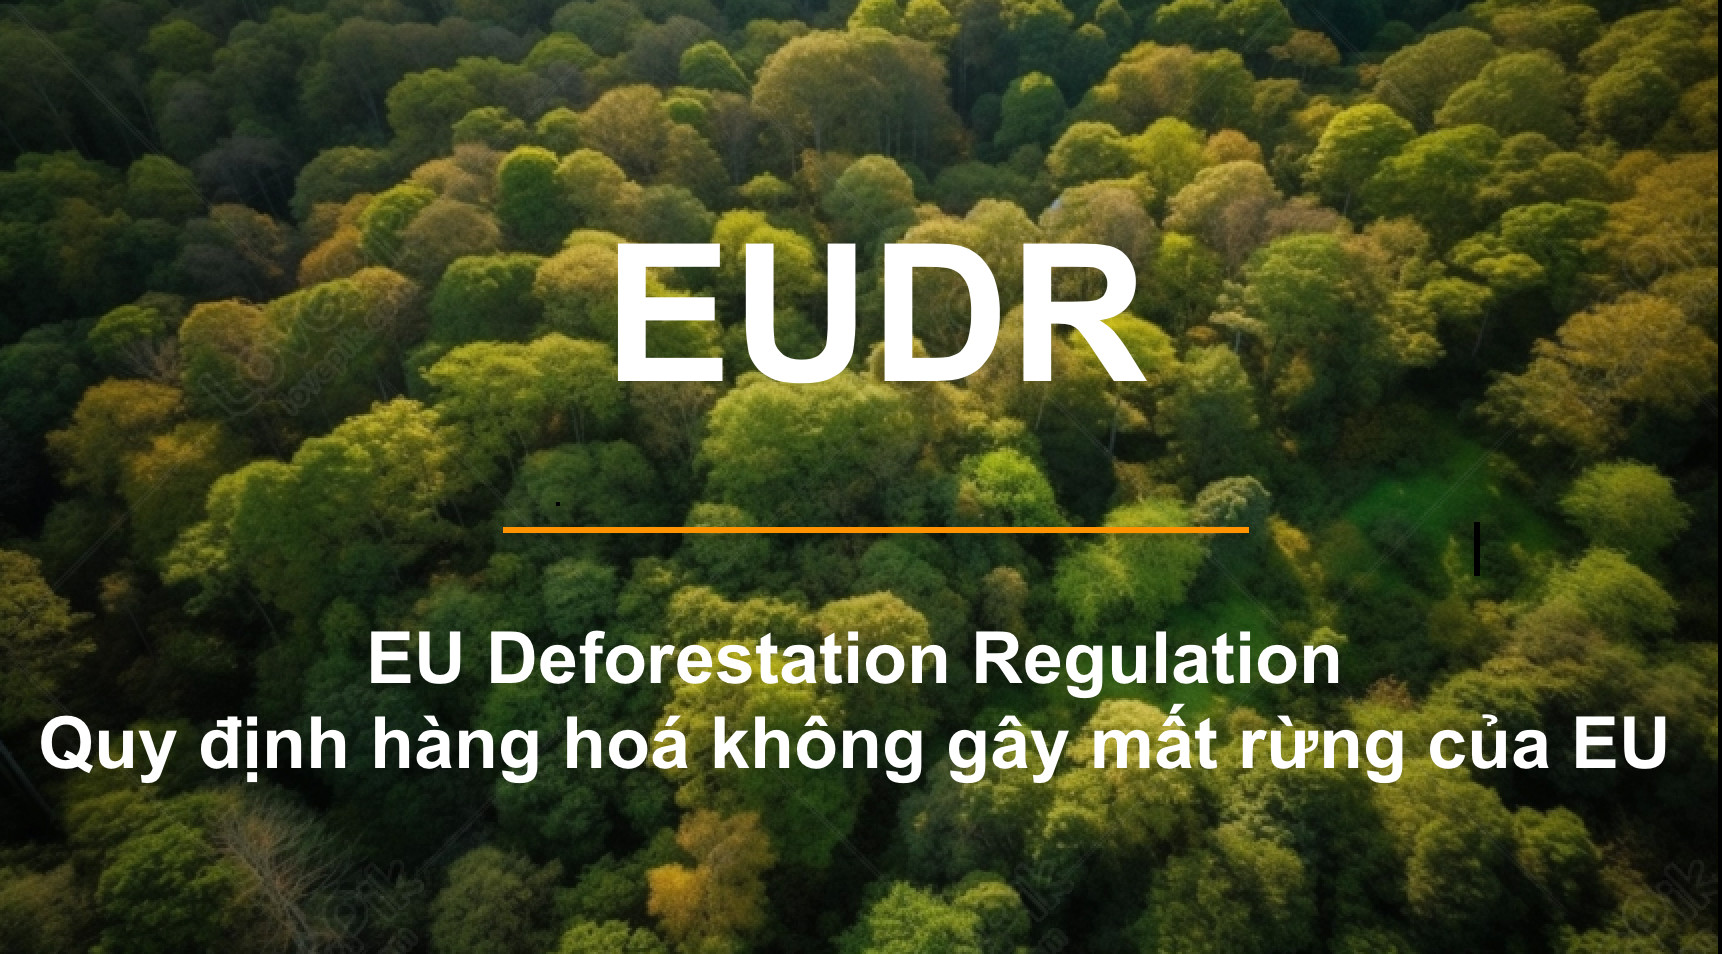 VIRI phối hợp cùng VFCO xây dựng hướng dẫn thực hiện quy định sản xuất hàng hóa nông nghiệp không gây mất rừng, đáp ứng các yêu cầu tuân thủ quy định EUDR